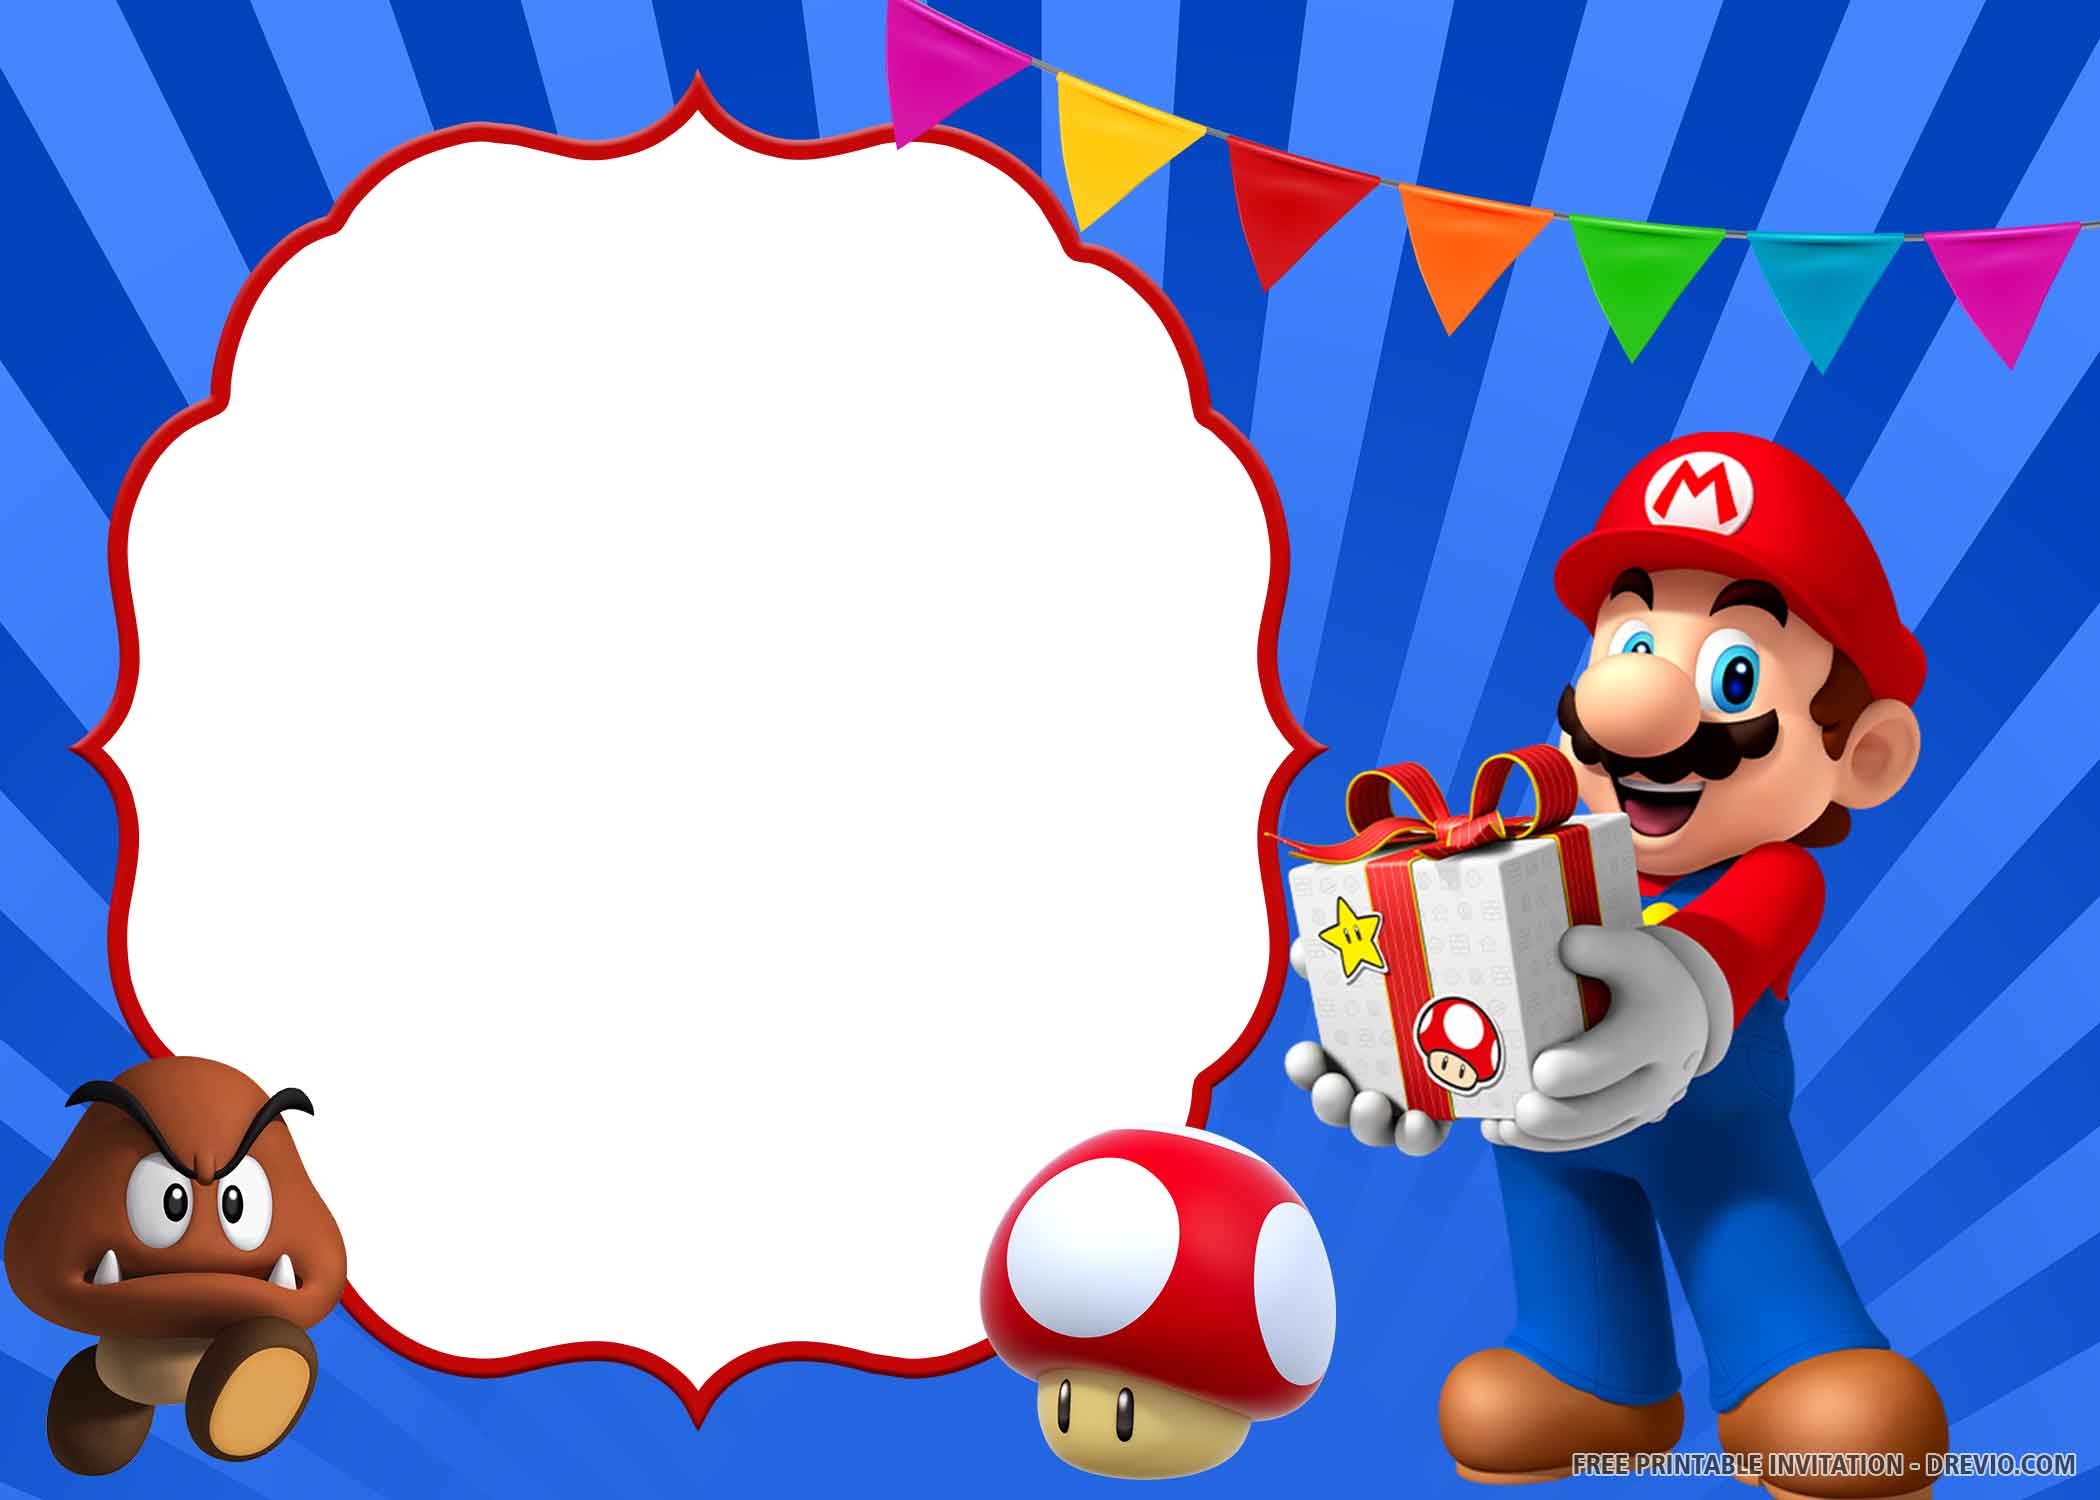 Arrepentimiento Vuelo Explícito FREE PRINTABLE) – Super Mario Birthday Invitation Templates | Download  Hundreds FREE PRINTABLE Birthday Invitation Templates